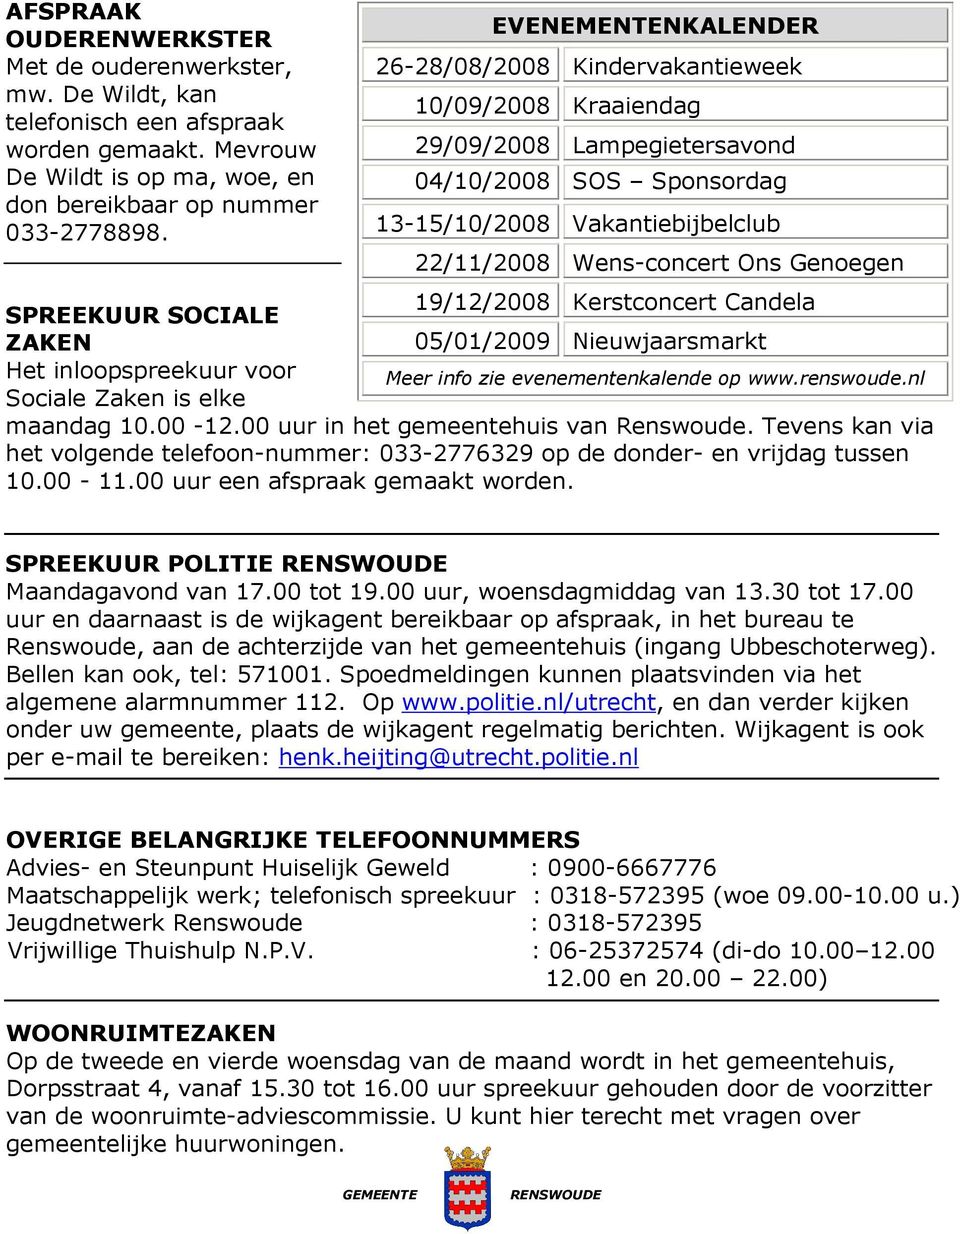 19/12/2008 Kerstconcert Candela SPREEKUUR SOCIALE ZAKEN 05/01/2009 Nieuwjaarsmarkt Het inloopspreekuur voor Meer info zie evenementenkalende op www.renswoude.nl Sociale Zaken is elke maandag 10.00-12.